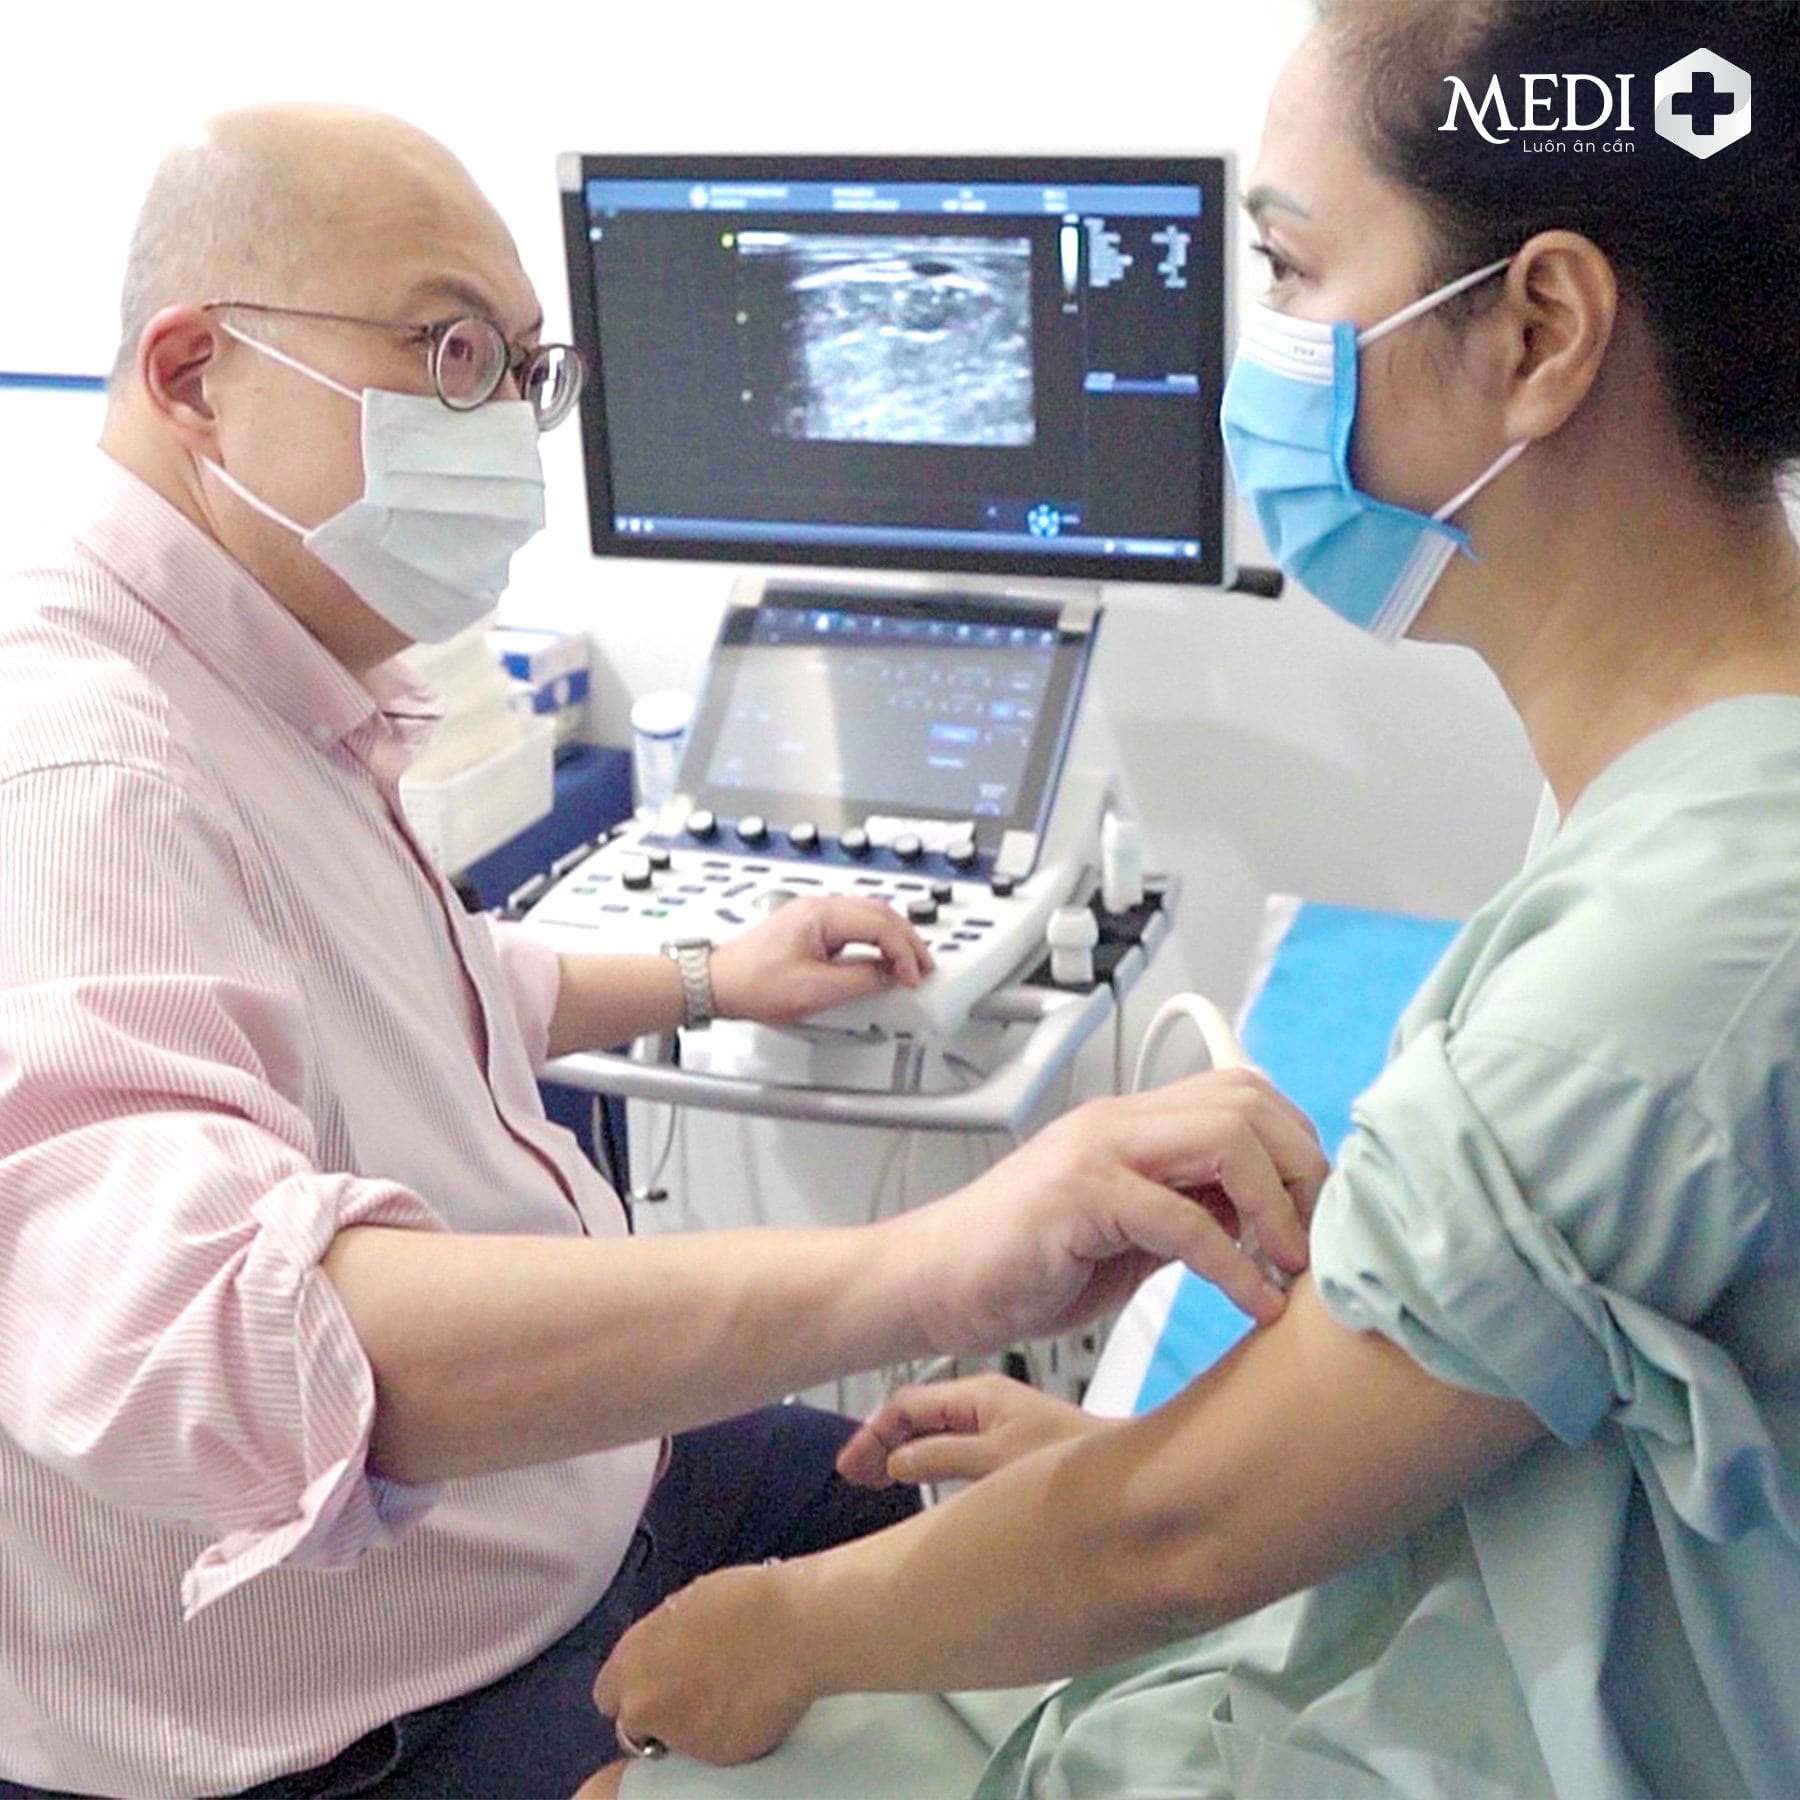 Tiến sĩ Benjamin Chua tiến hành siêu âm cho bệnh nhân